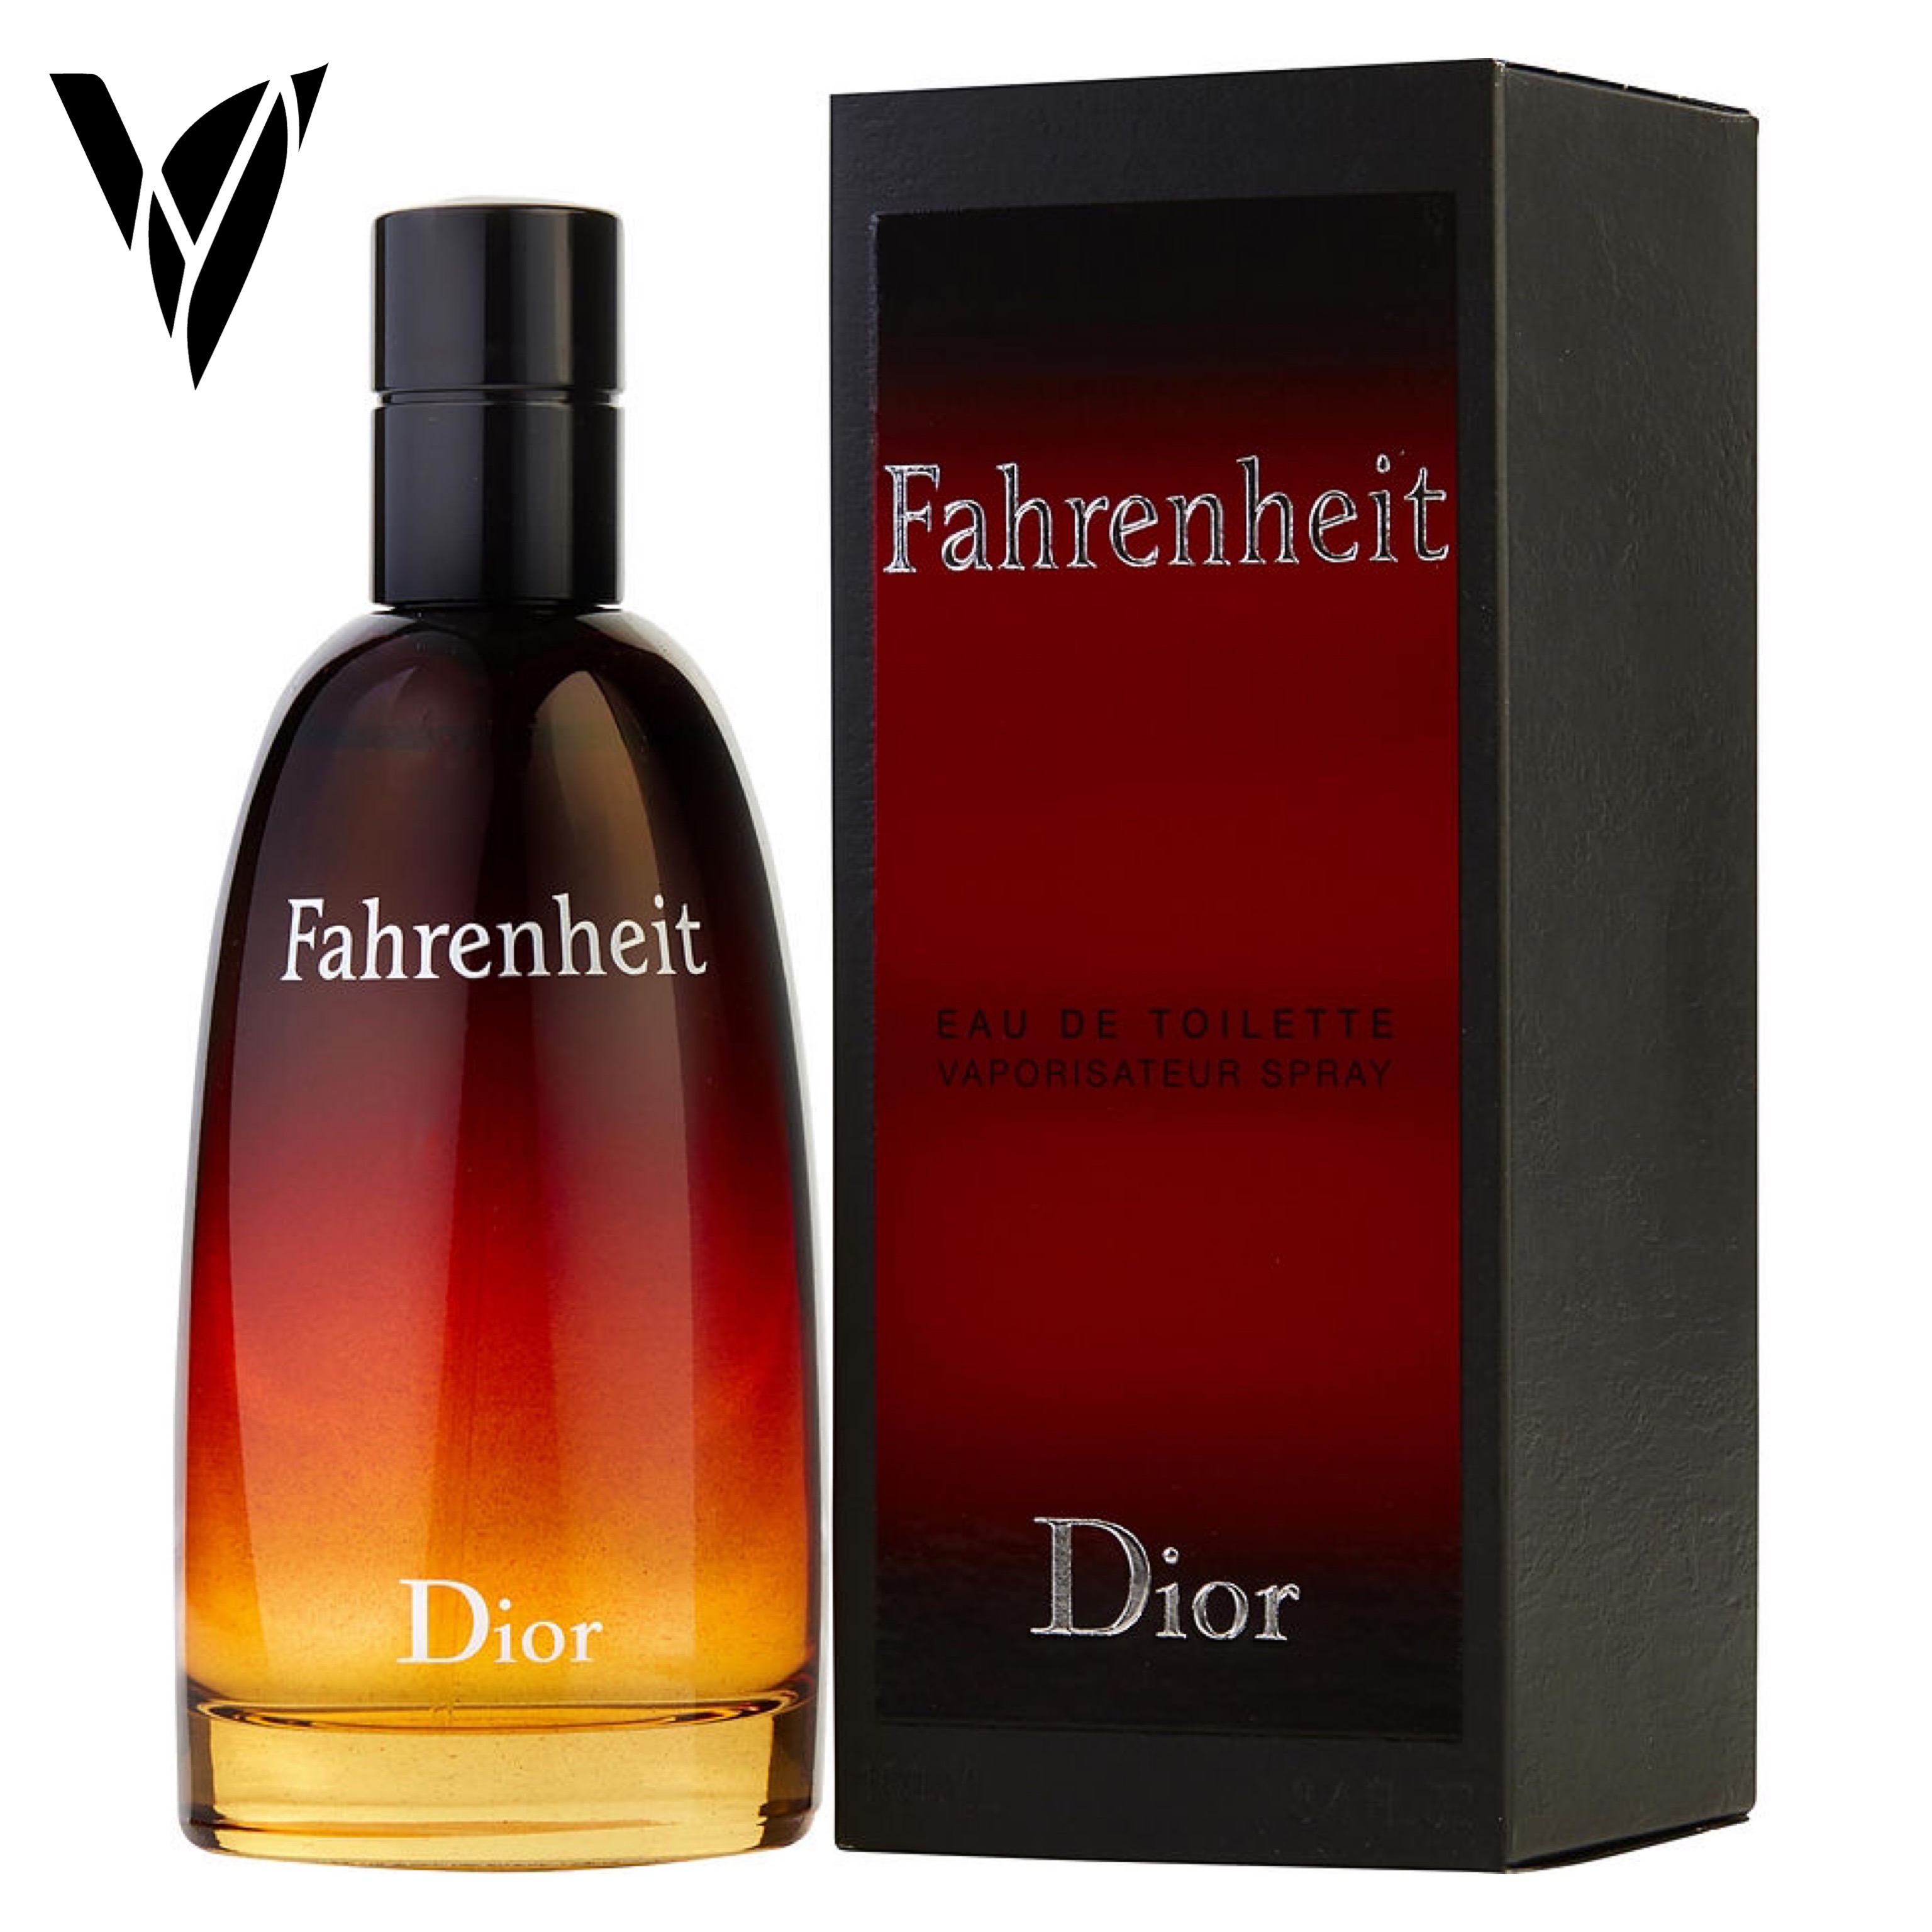 Fahrenheit Dior 1.1 + Decant